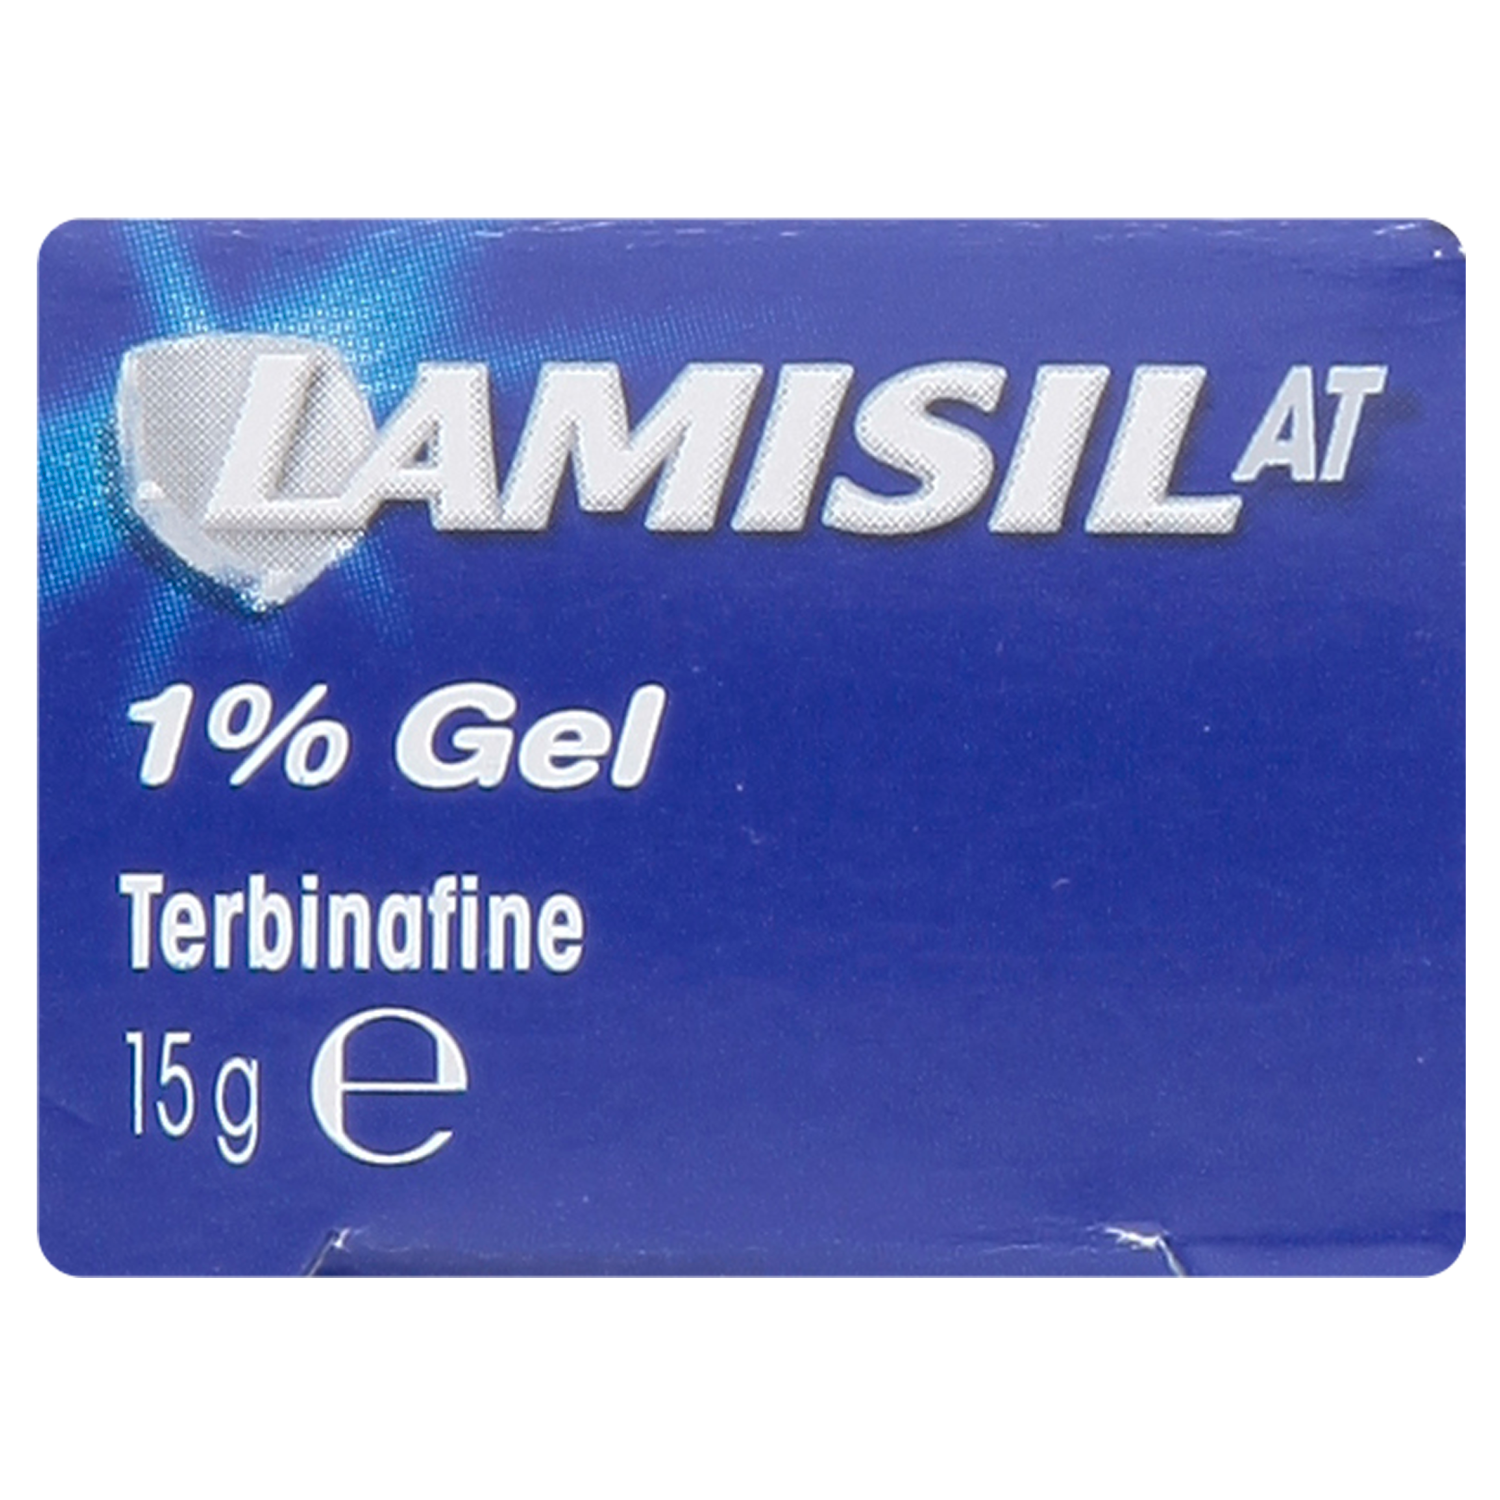 Lamisil AT 1% Gel 15g